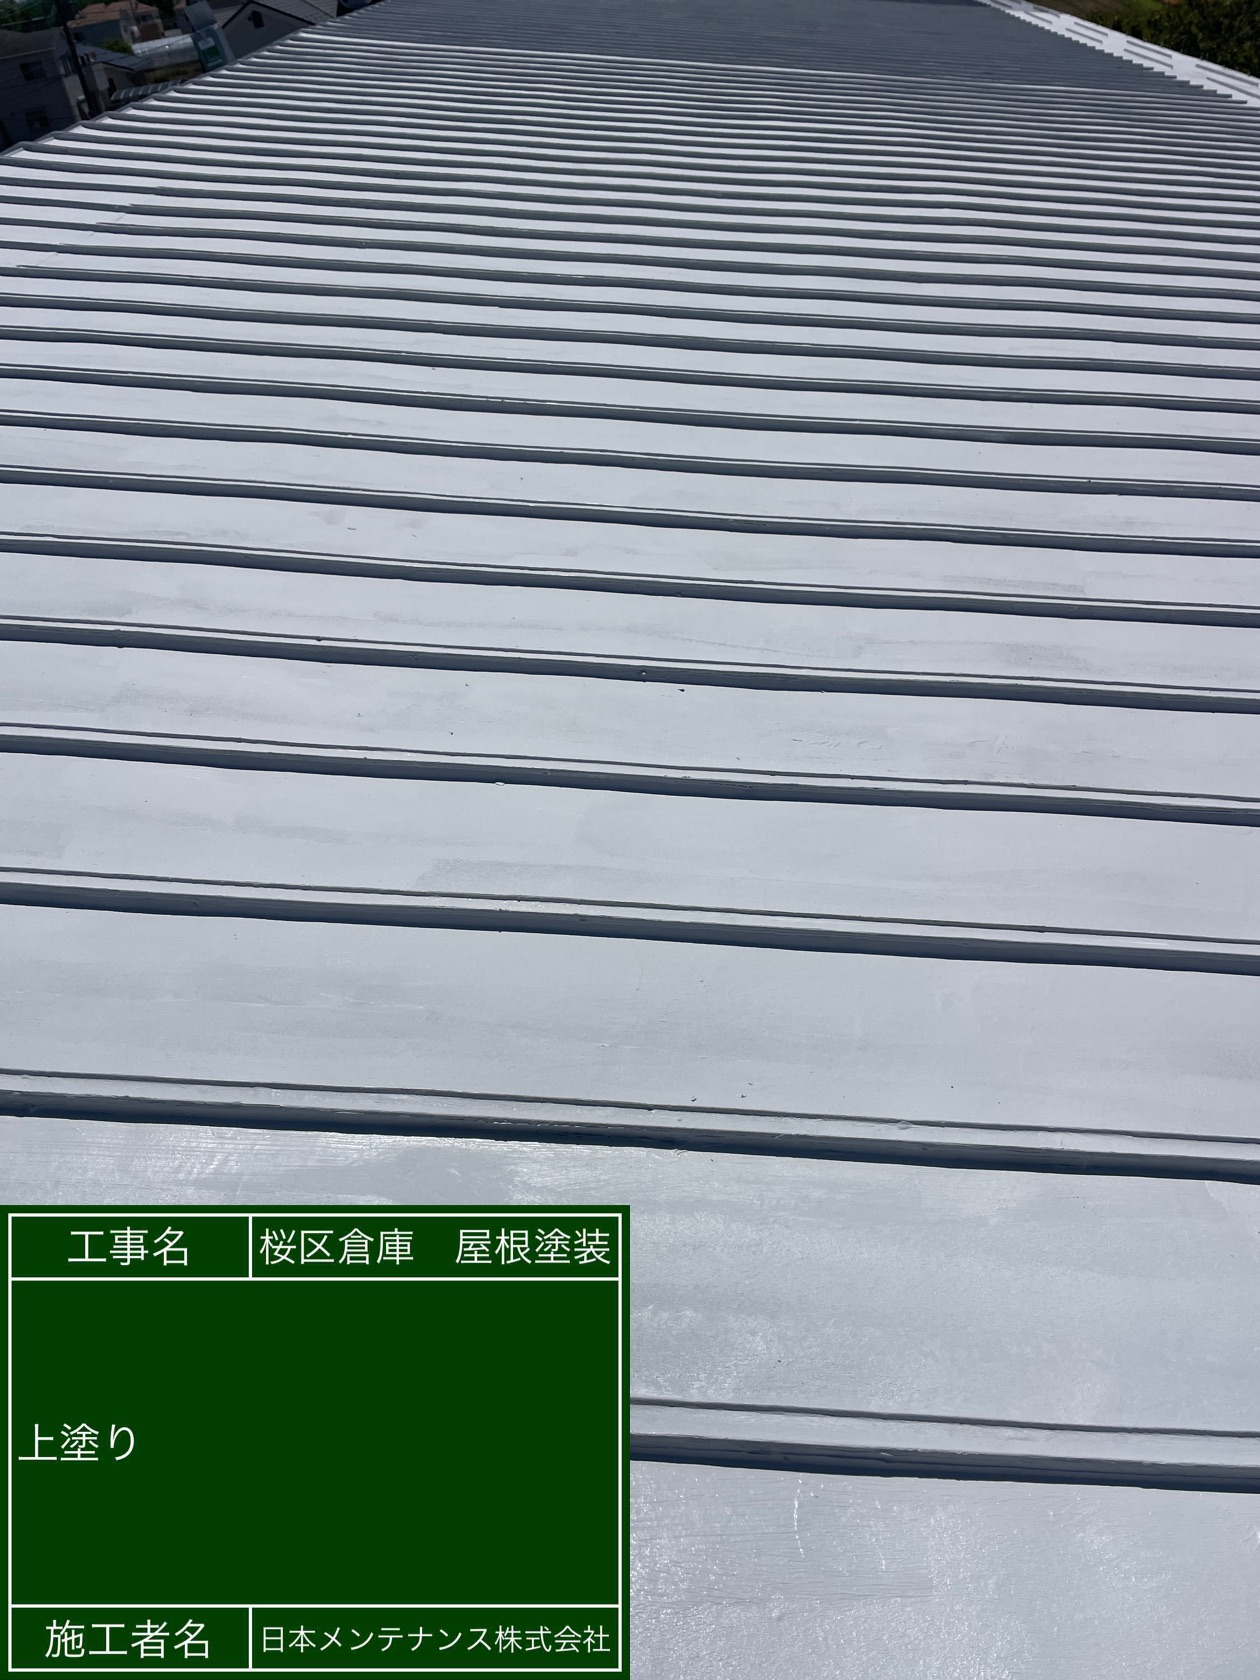 埼玉県さいたま市桜区で瓦棒屋根を雨漏り抑制効果と断熱効果のある塗料で塗装しました。施工後